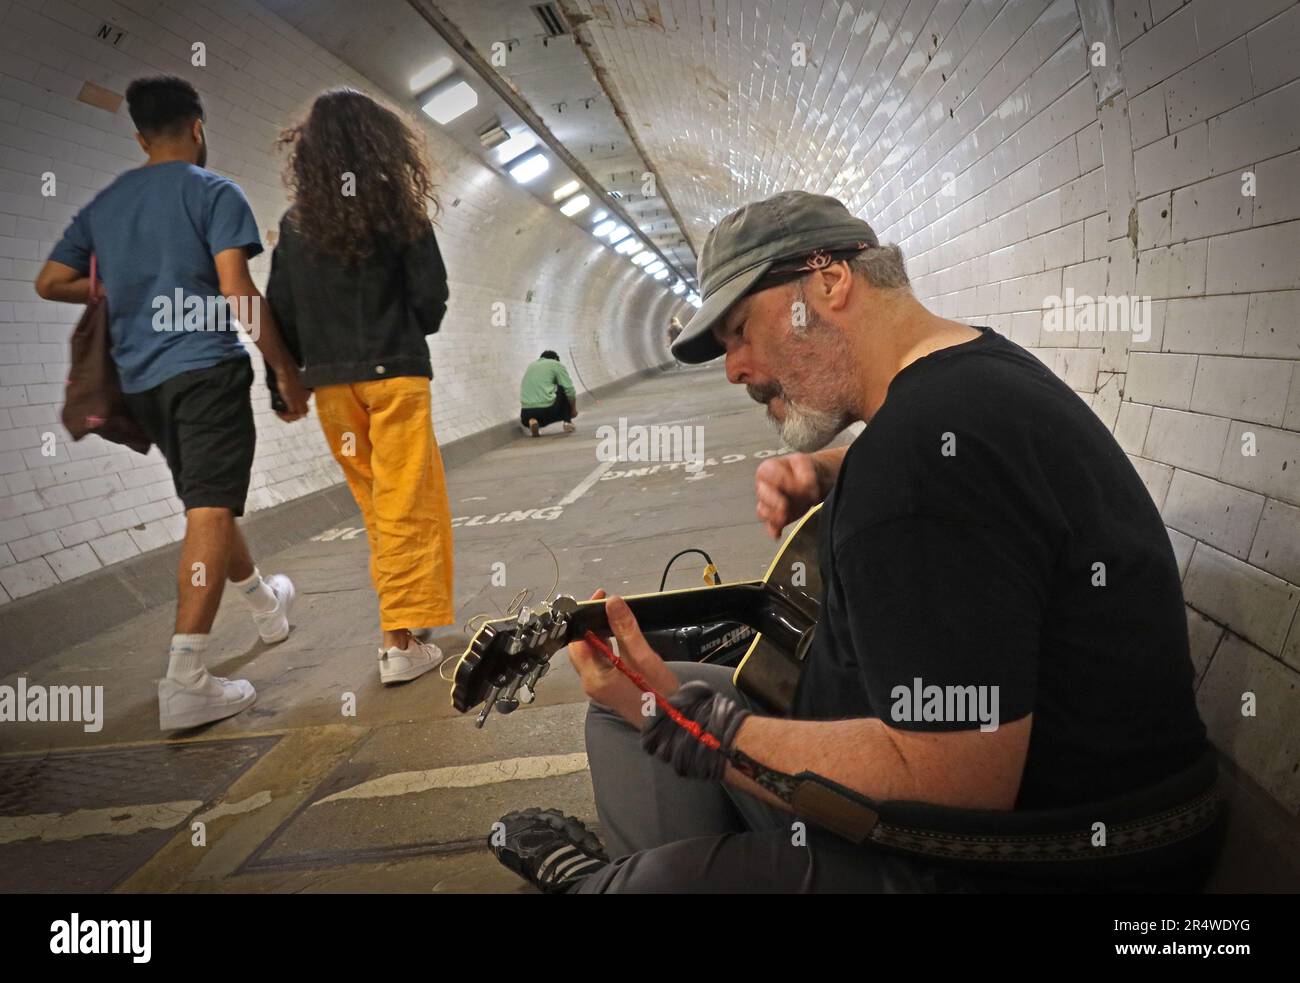 Busker dans le tunnel à pied de la Tamise de Greenwich, des randonneurs de divertissement allant de Greenwich à l'île des chiens, est de Londres, Angleterre, Royaume-Uni, SE10 9HT Banque D'Images